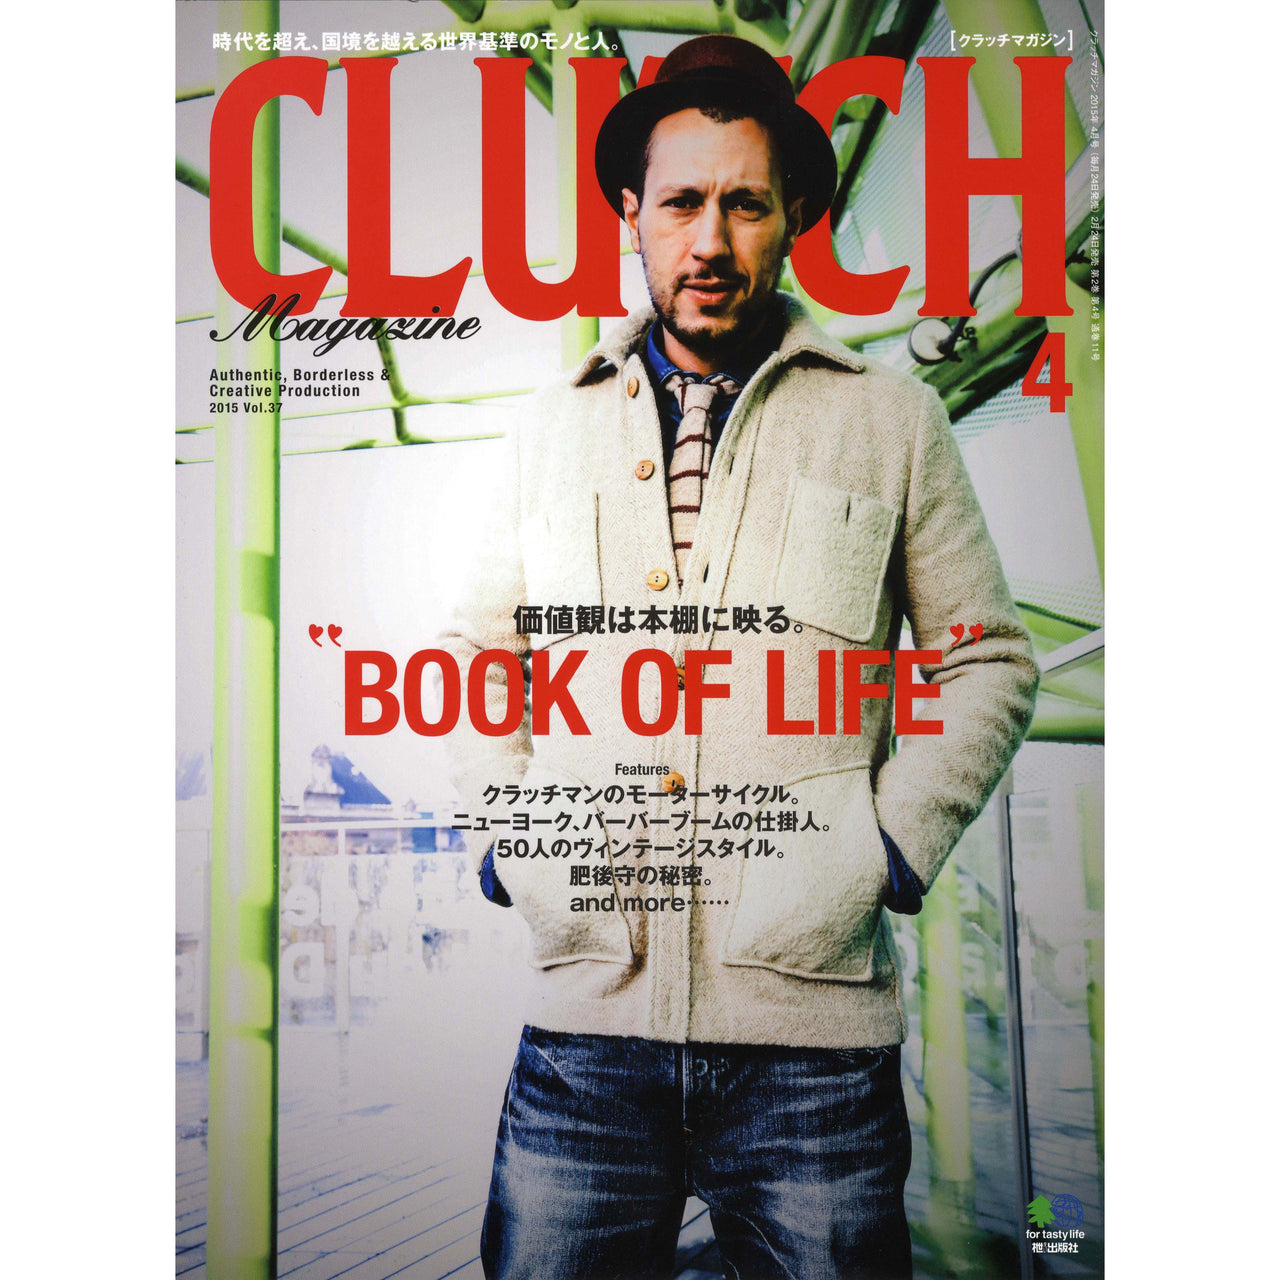 Clutch Magazine Vol.37-Clutch Cafe